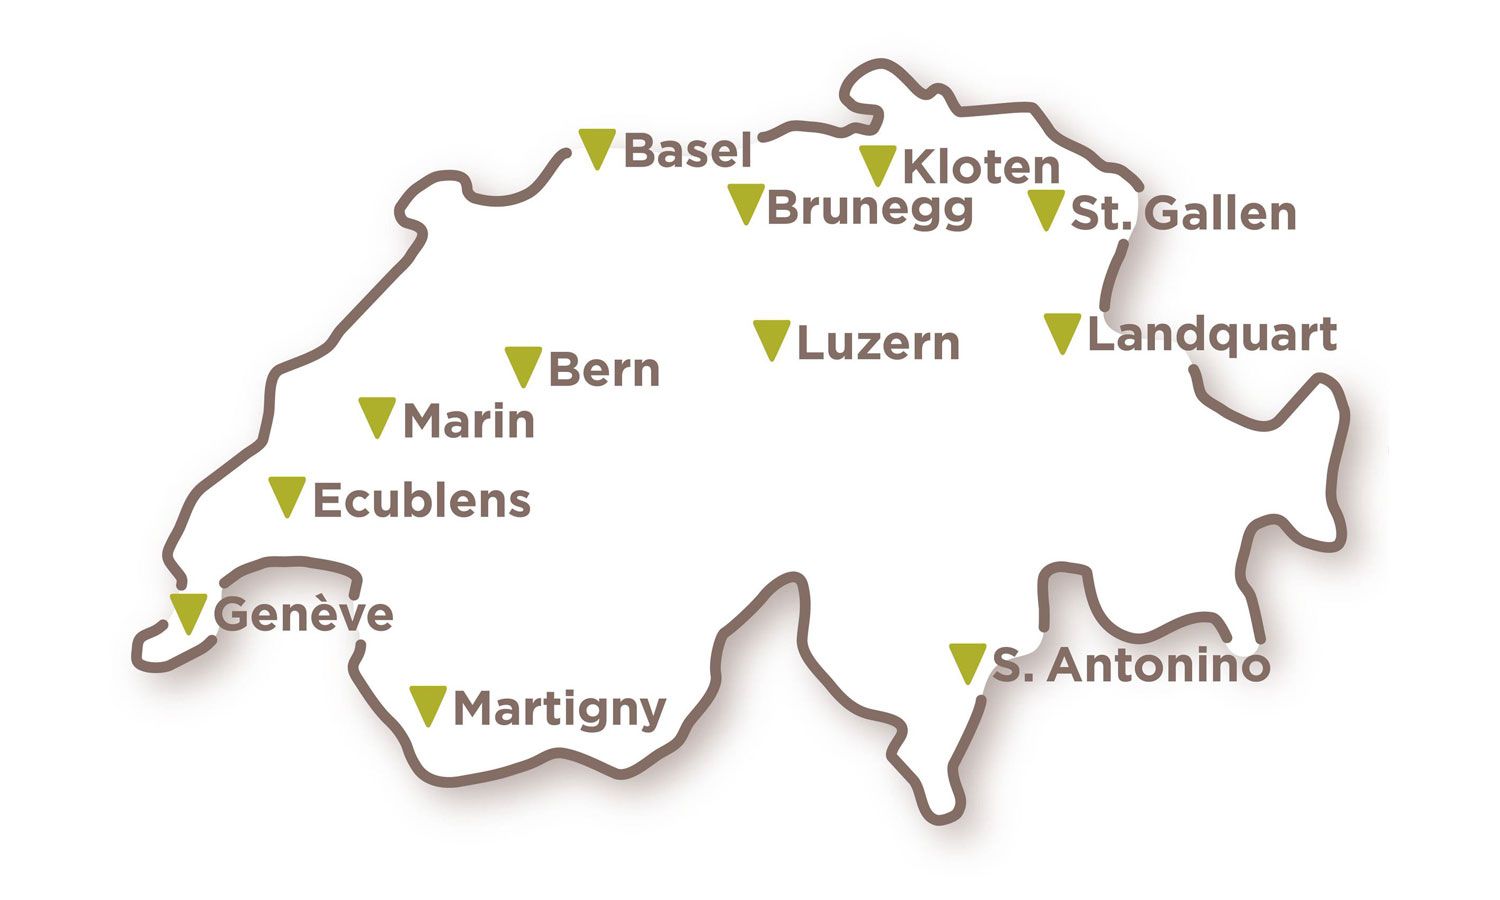 2019 eröffnete Saviva schweizweit 11 (!) regionale Verkaufs- und Logistikzentren